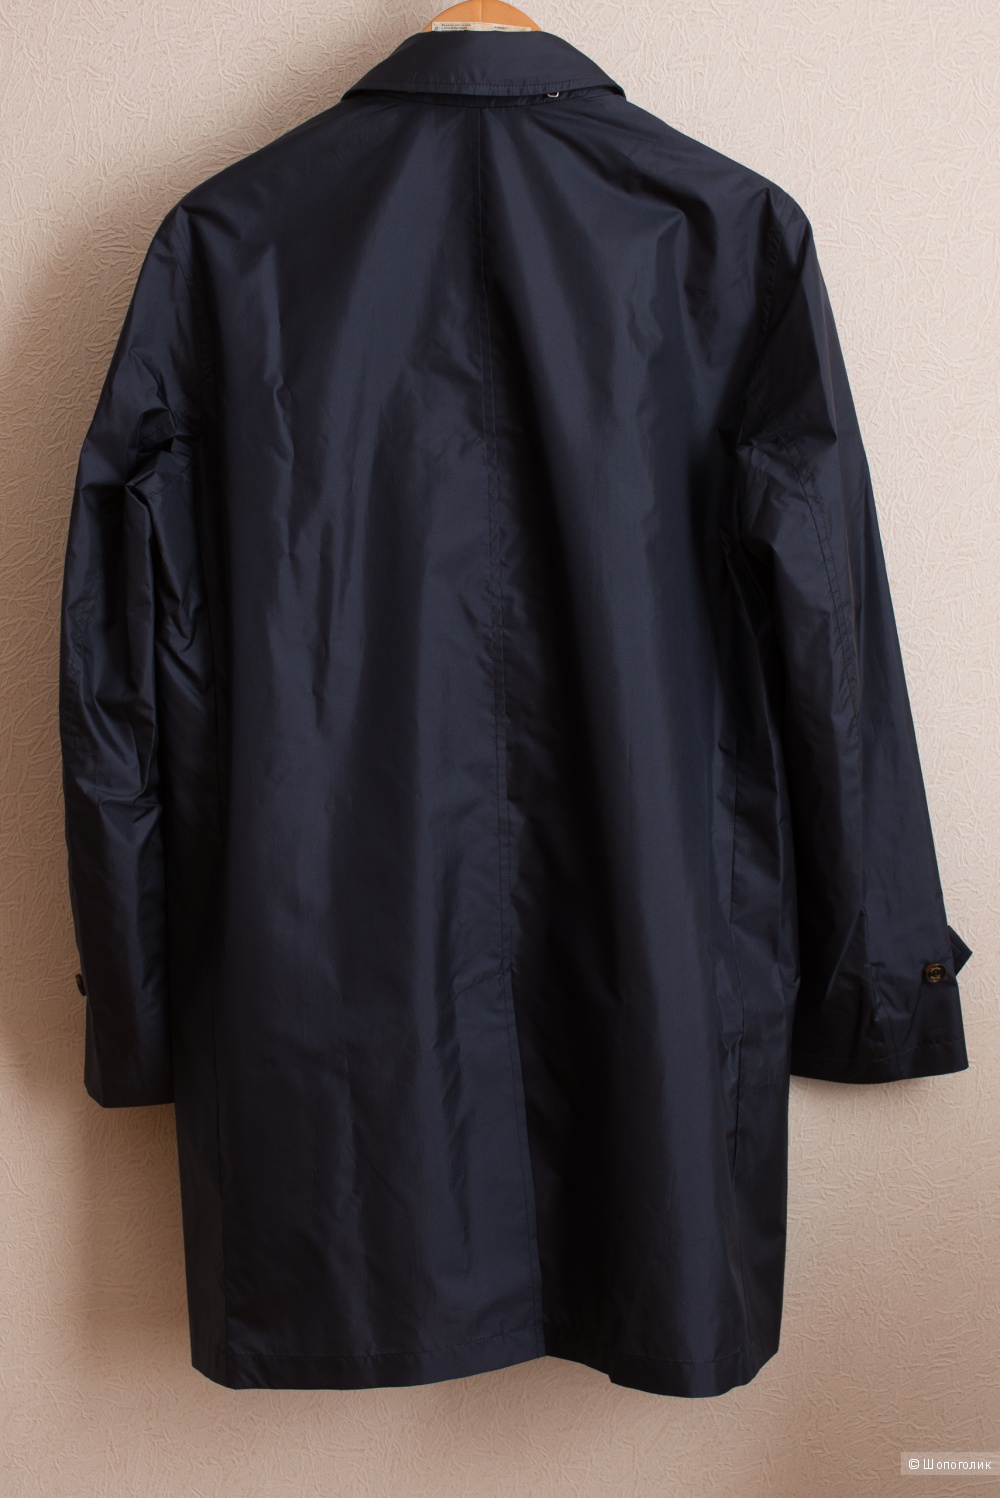 Плащ Sealup Bellagio coat, 52it (русский 52-53)